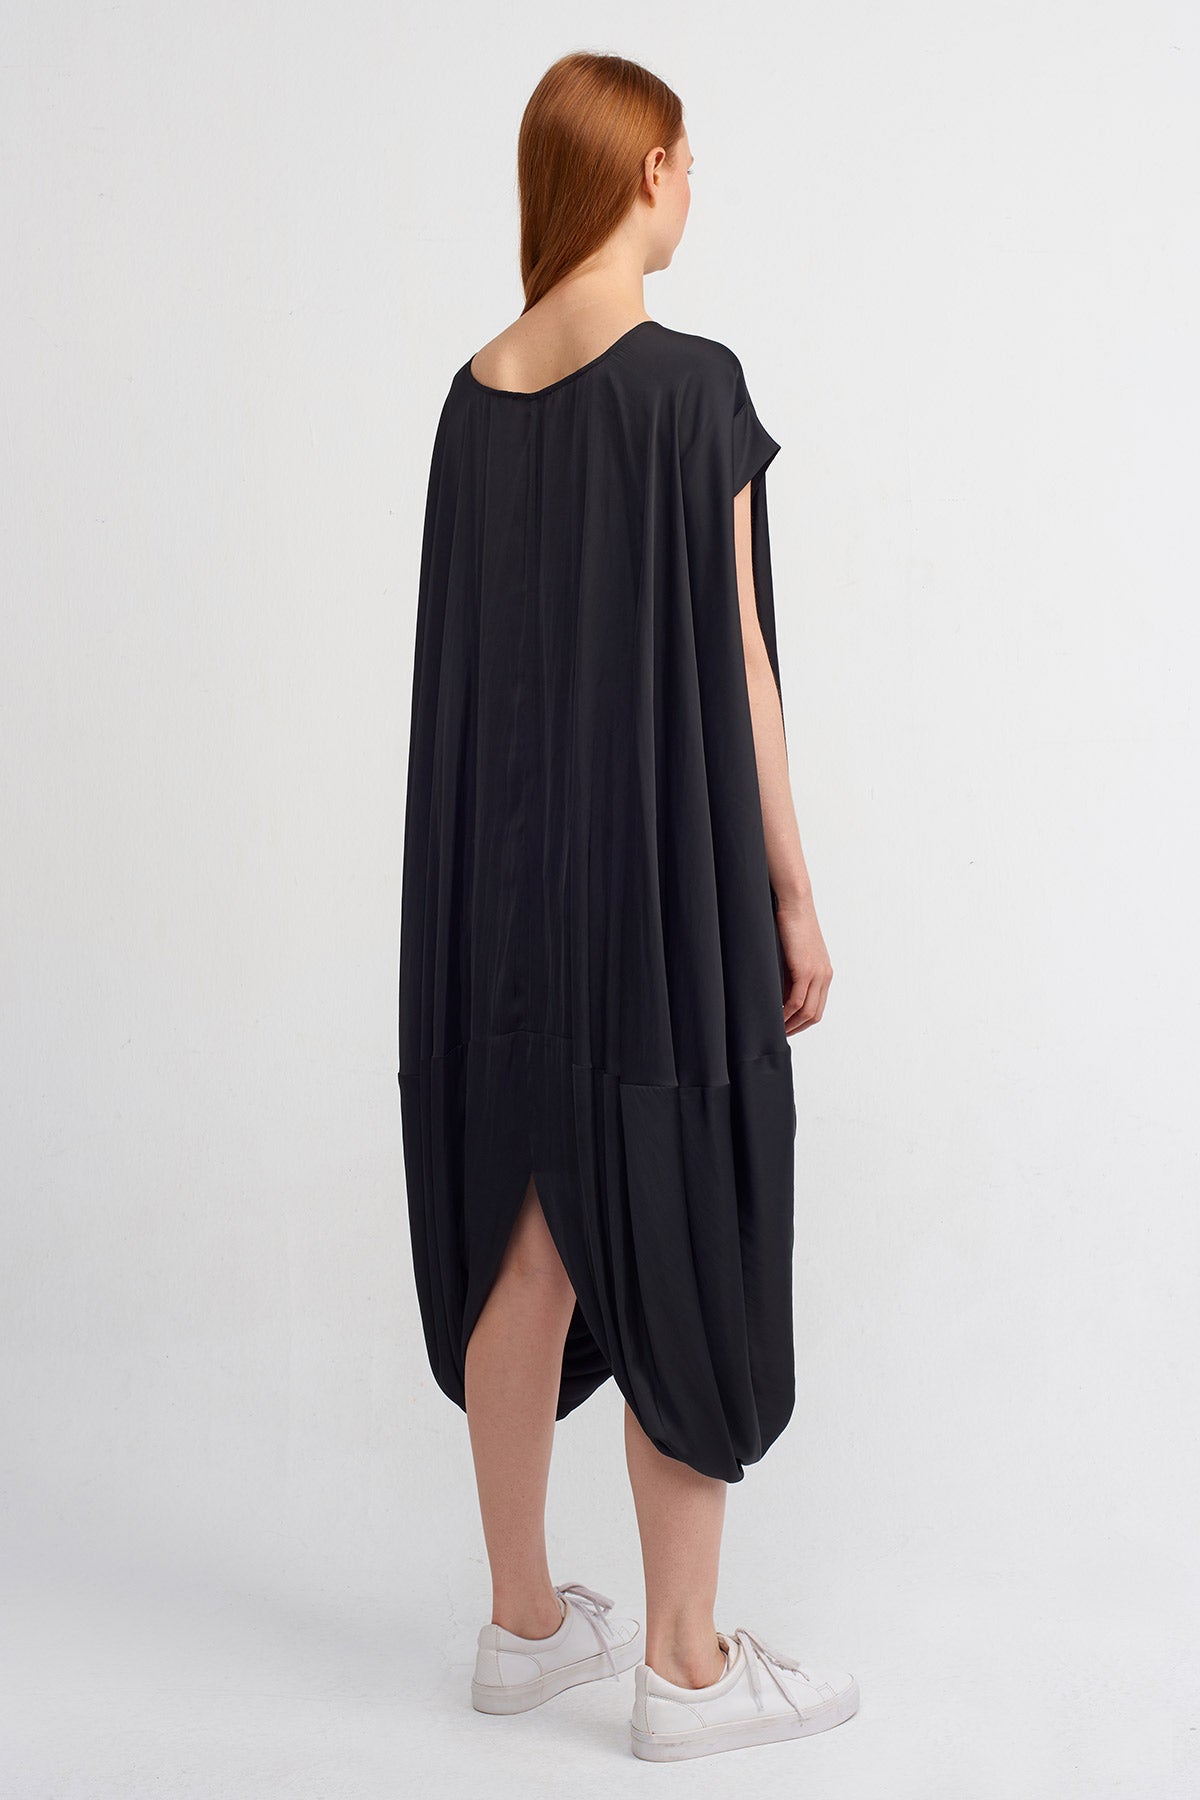 Black Wrap Skirt Hem Satin Dress-Y244014076